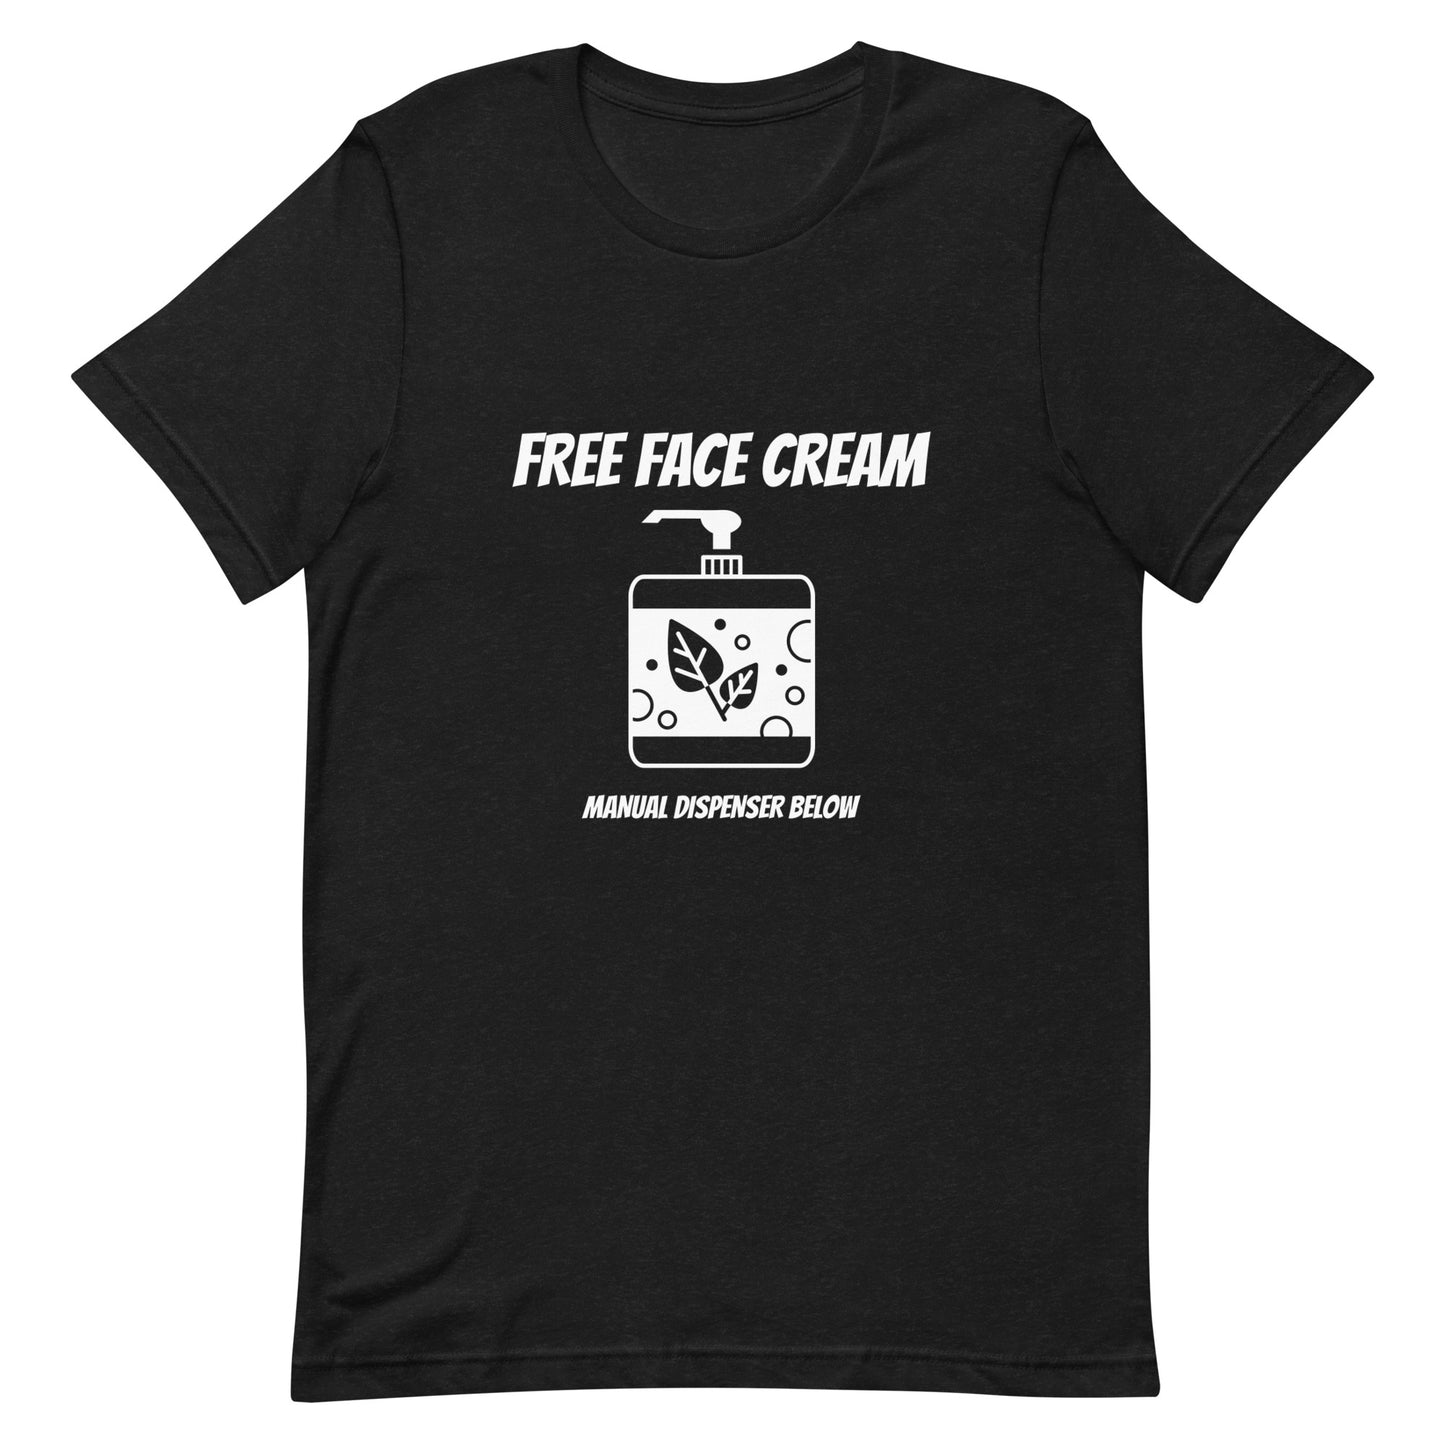 Free face cream